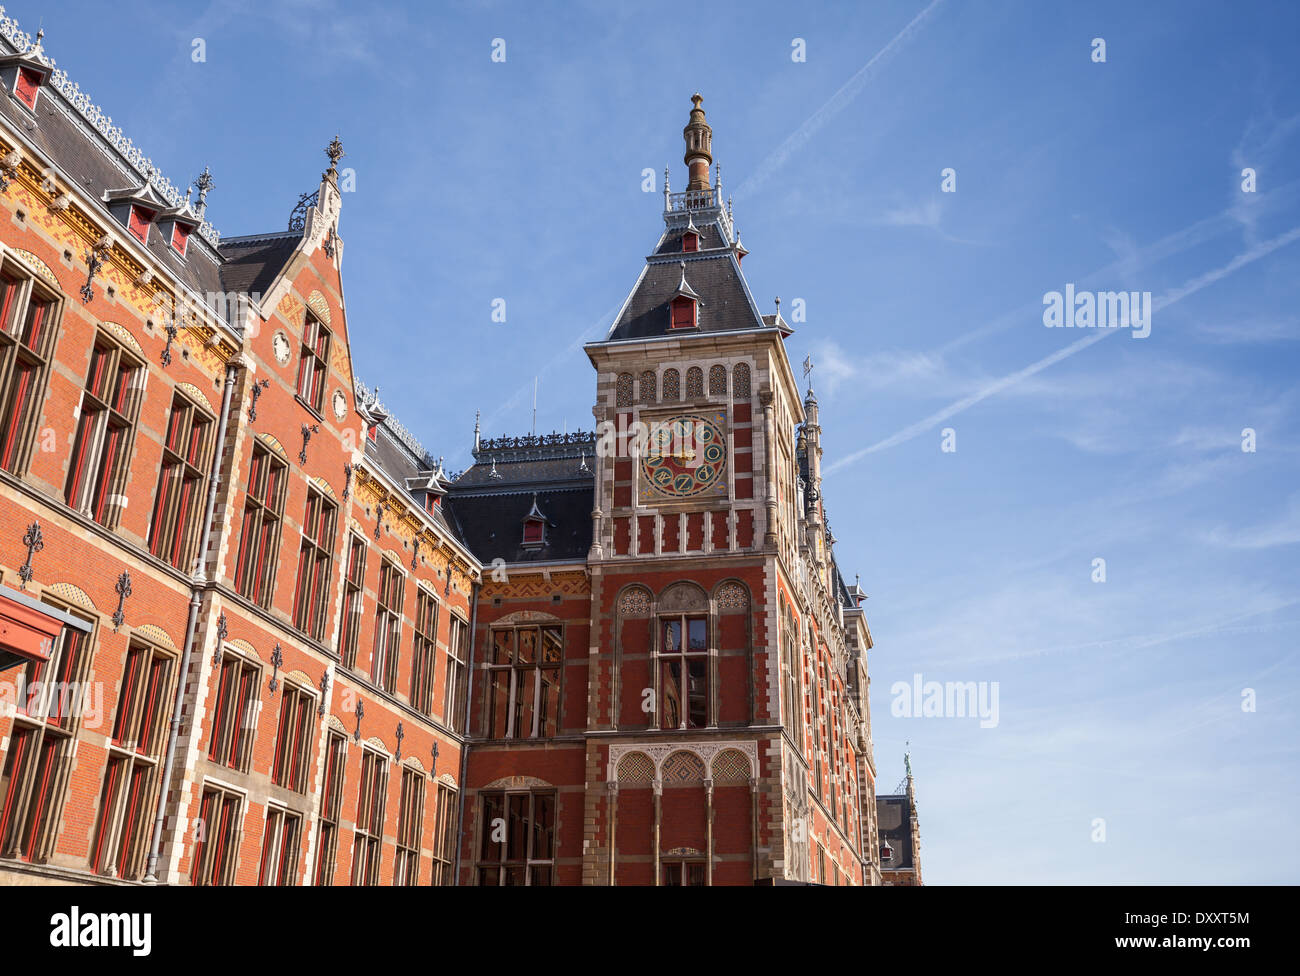 Alte Gebäude-Fassade von Amsterdam Centraal - Zentralbahnhof der Stadt Stockfoto